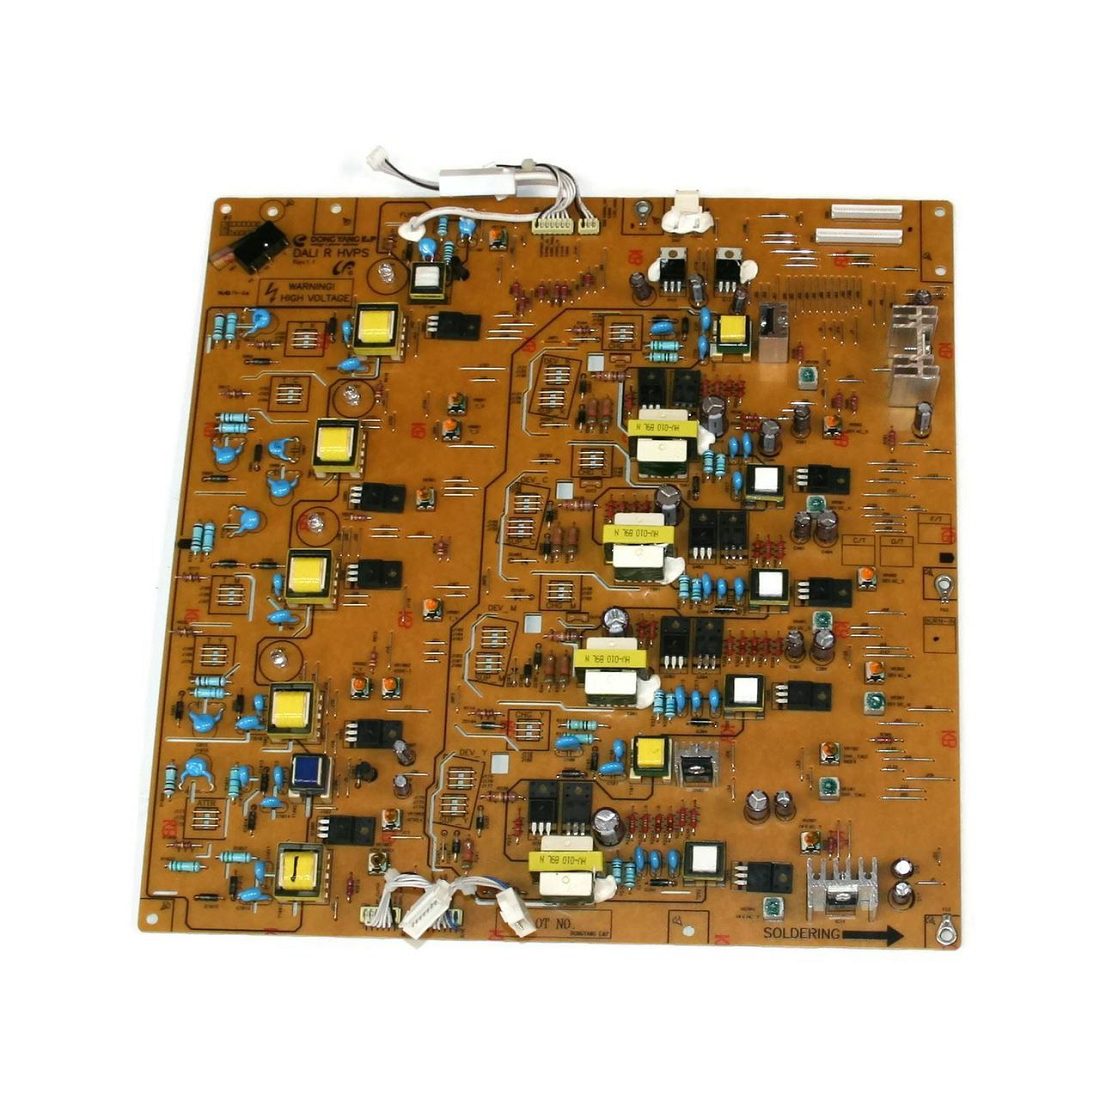 High Voltage HV Power Supply Board For Samsung CLP-620 CLP-670 CLP-620ND CLP-670ND Printer (JC44-00183A)